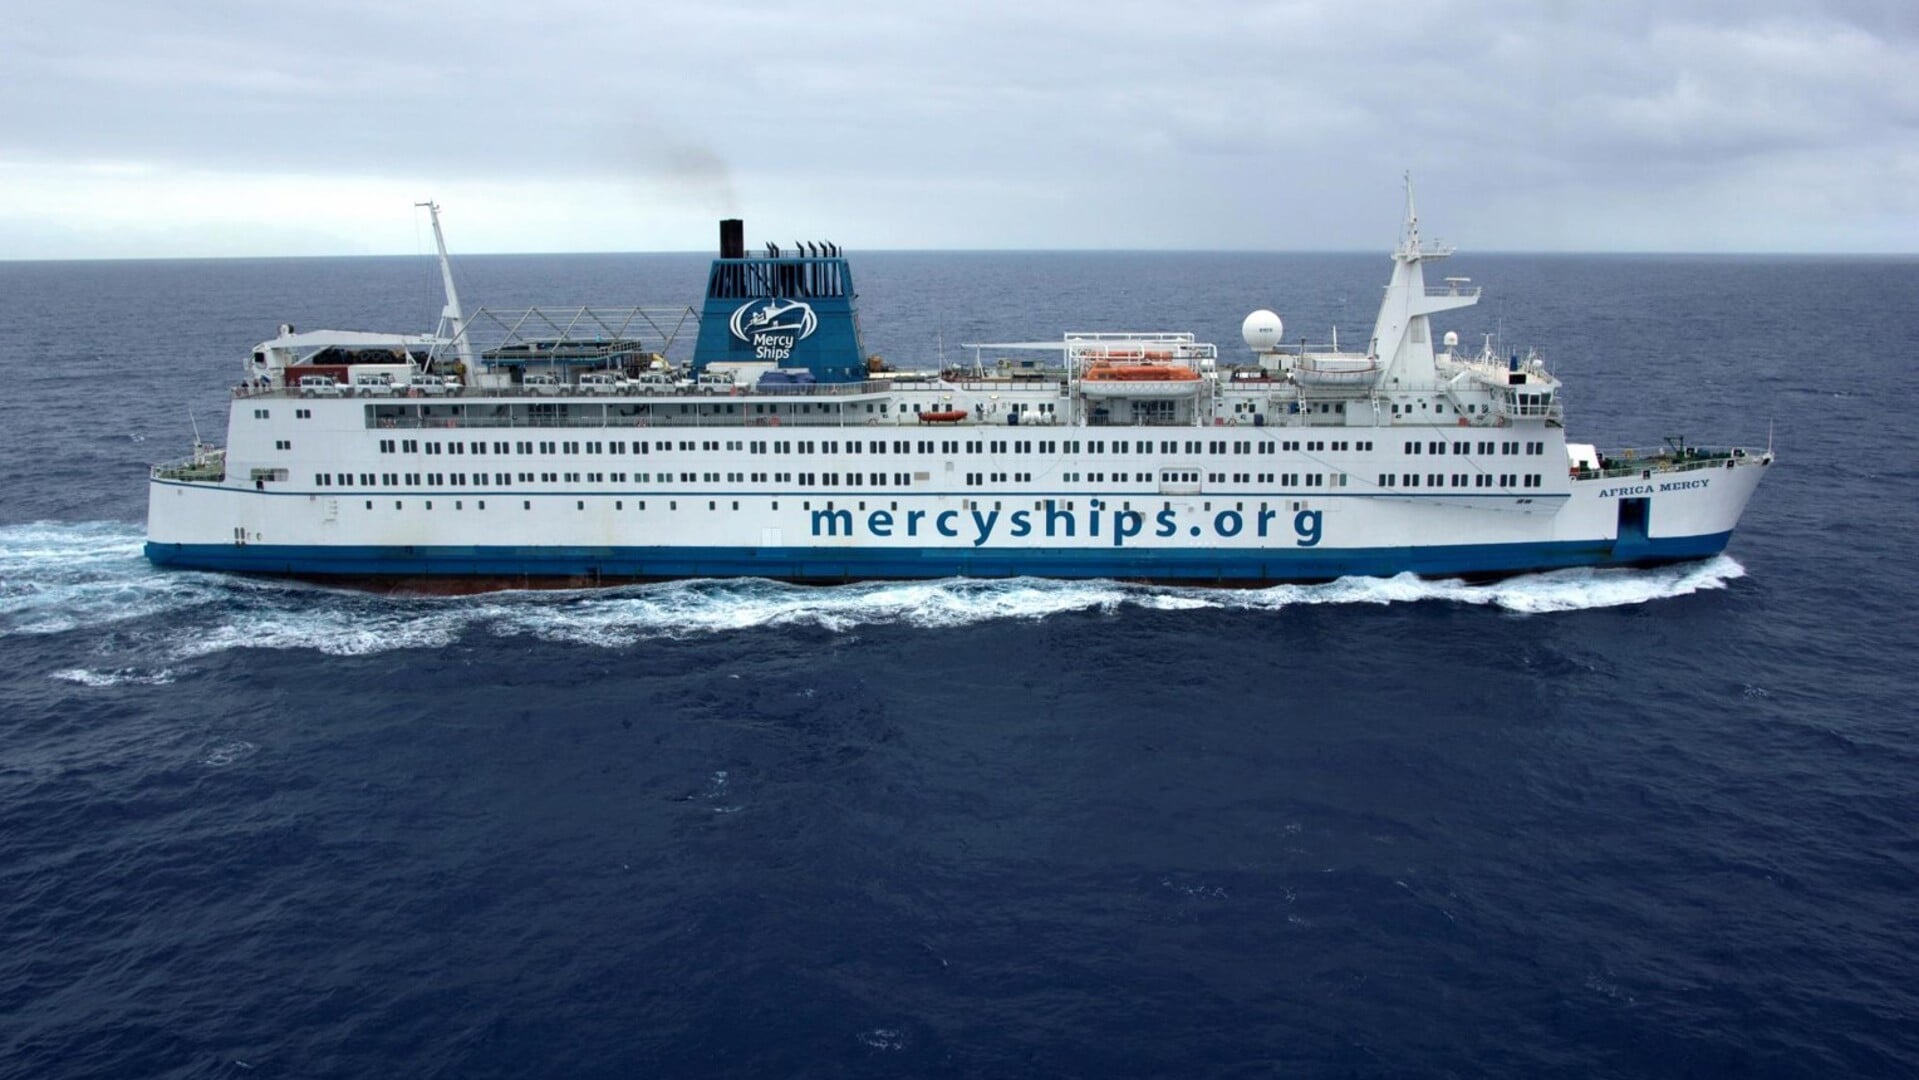 Aan boord van Mercy Ships ontvangen miljoenen mensen gratis een operatie